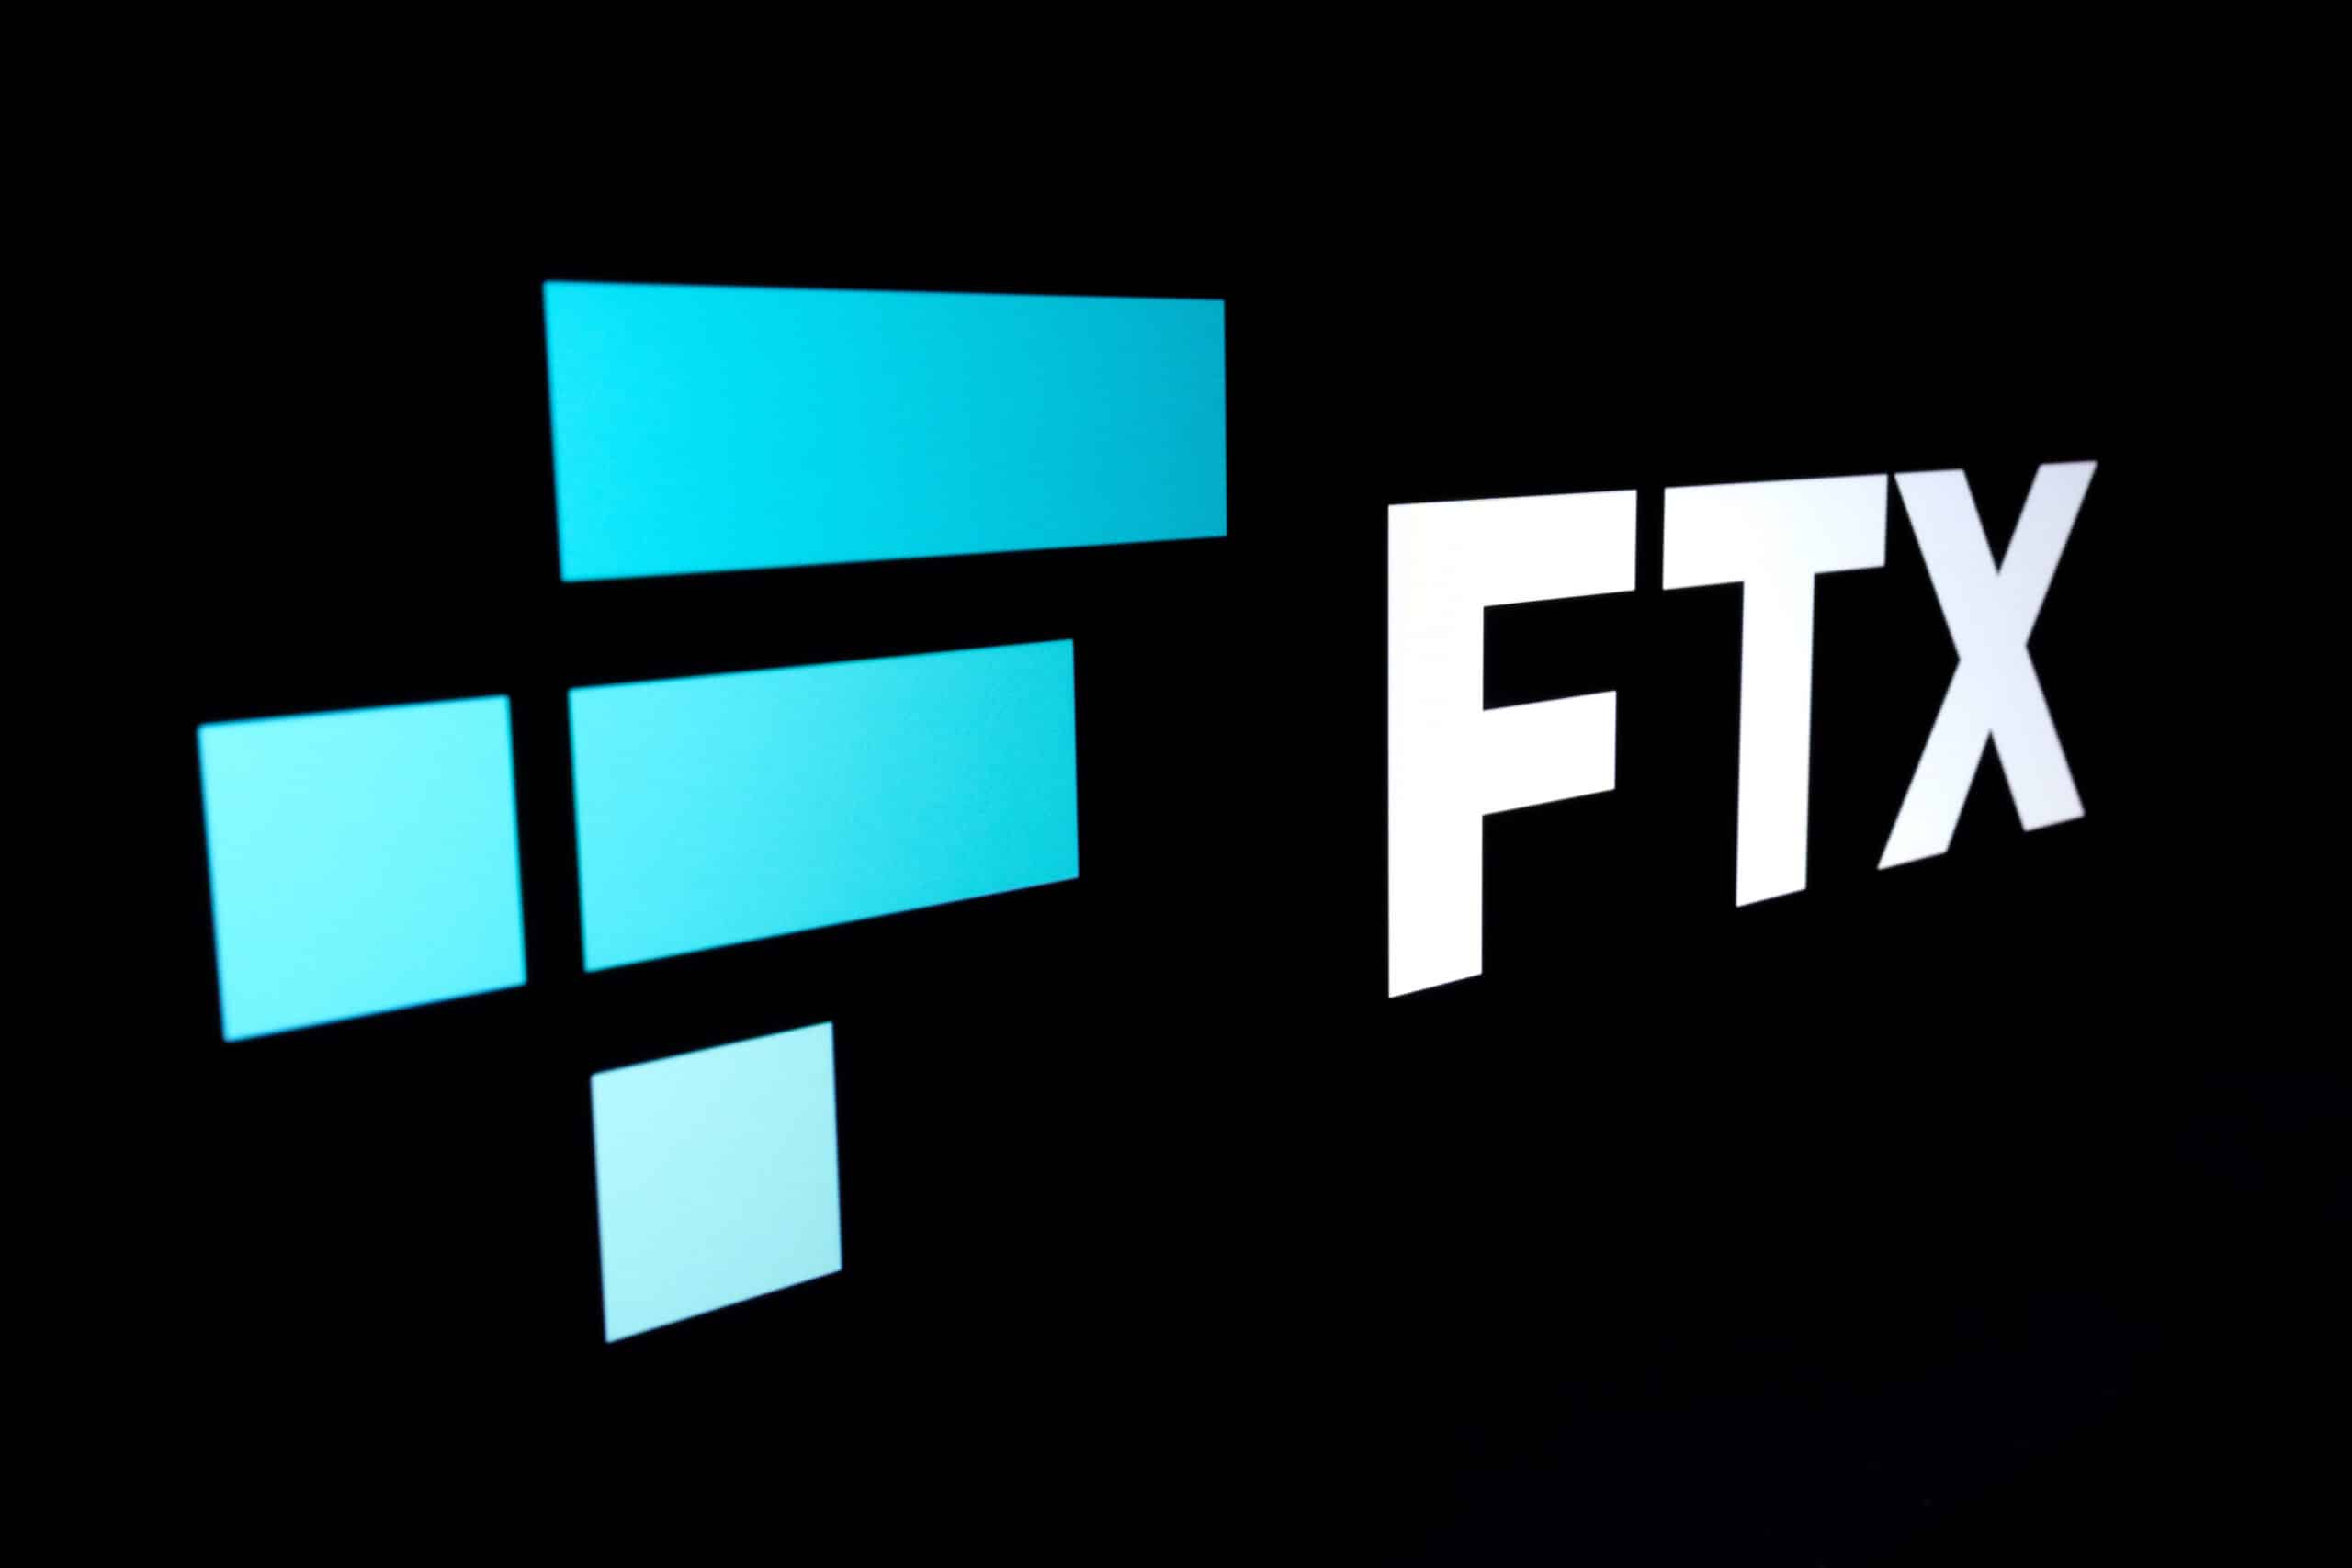 New Suit susține că FTX și-a păstrat frauda toată în familie